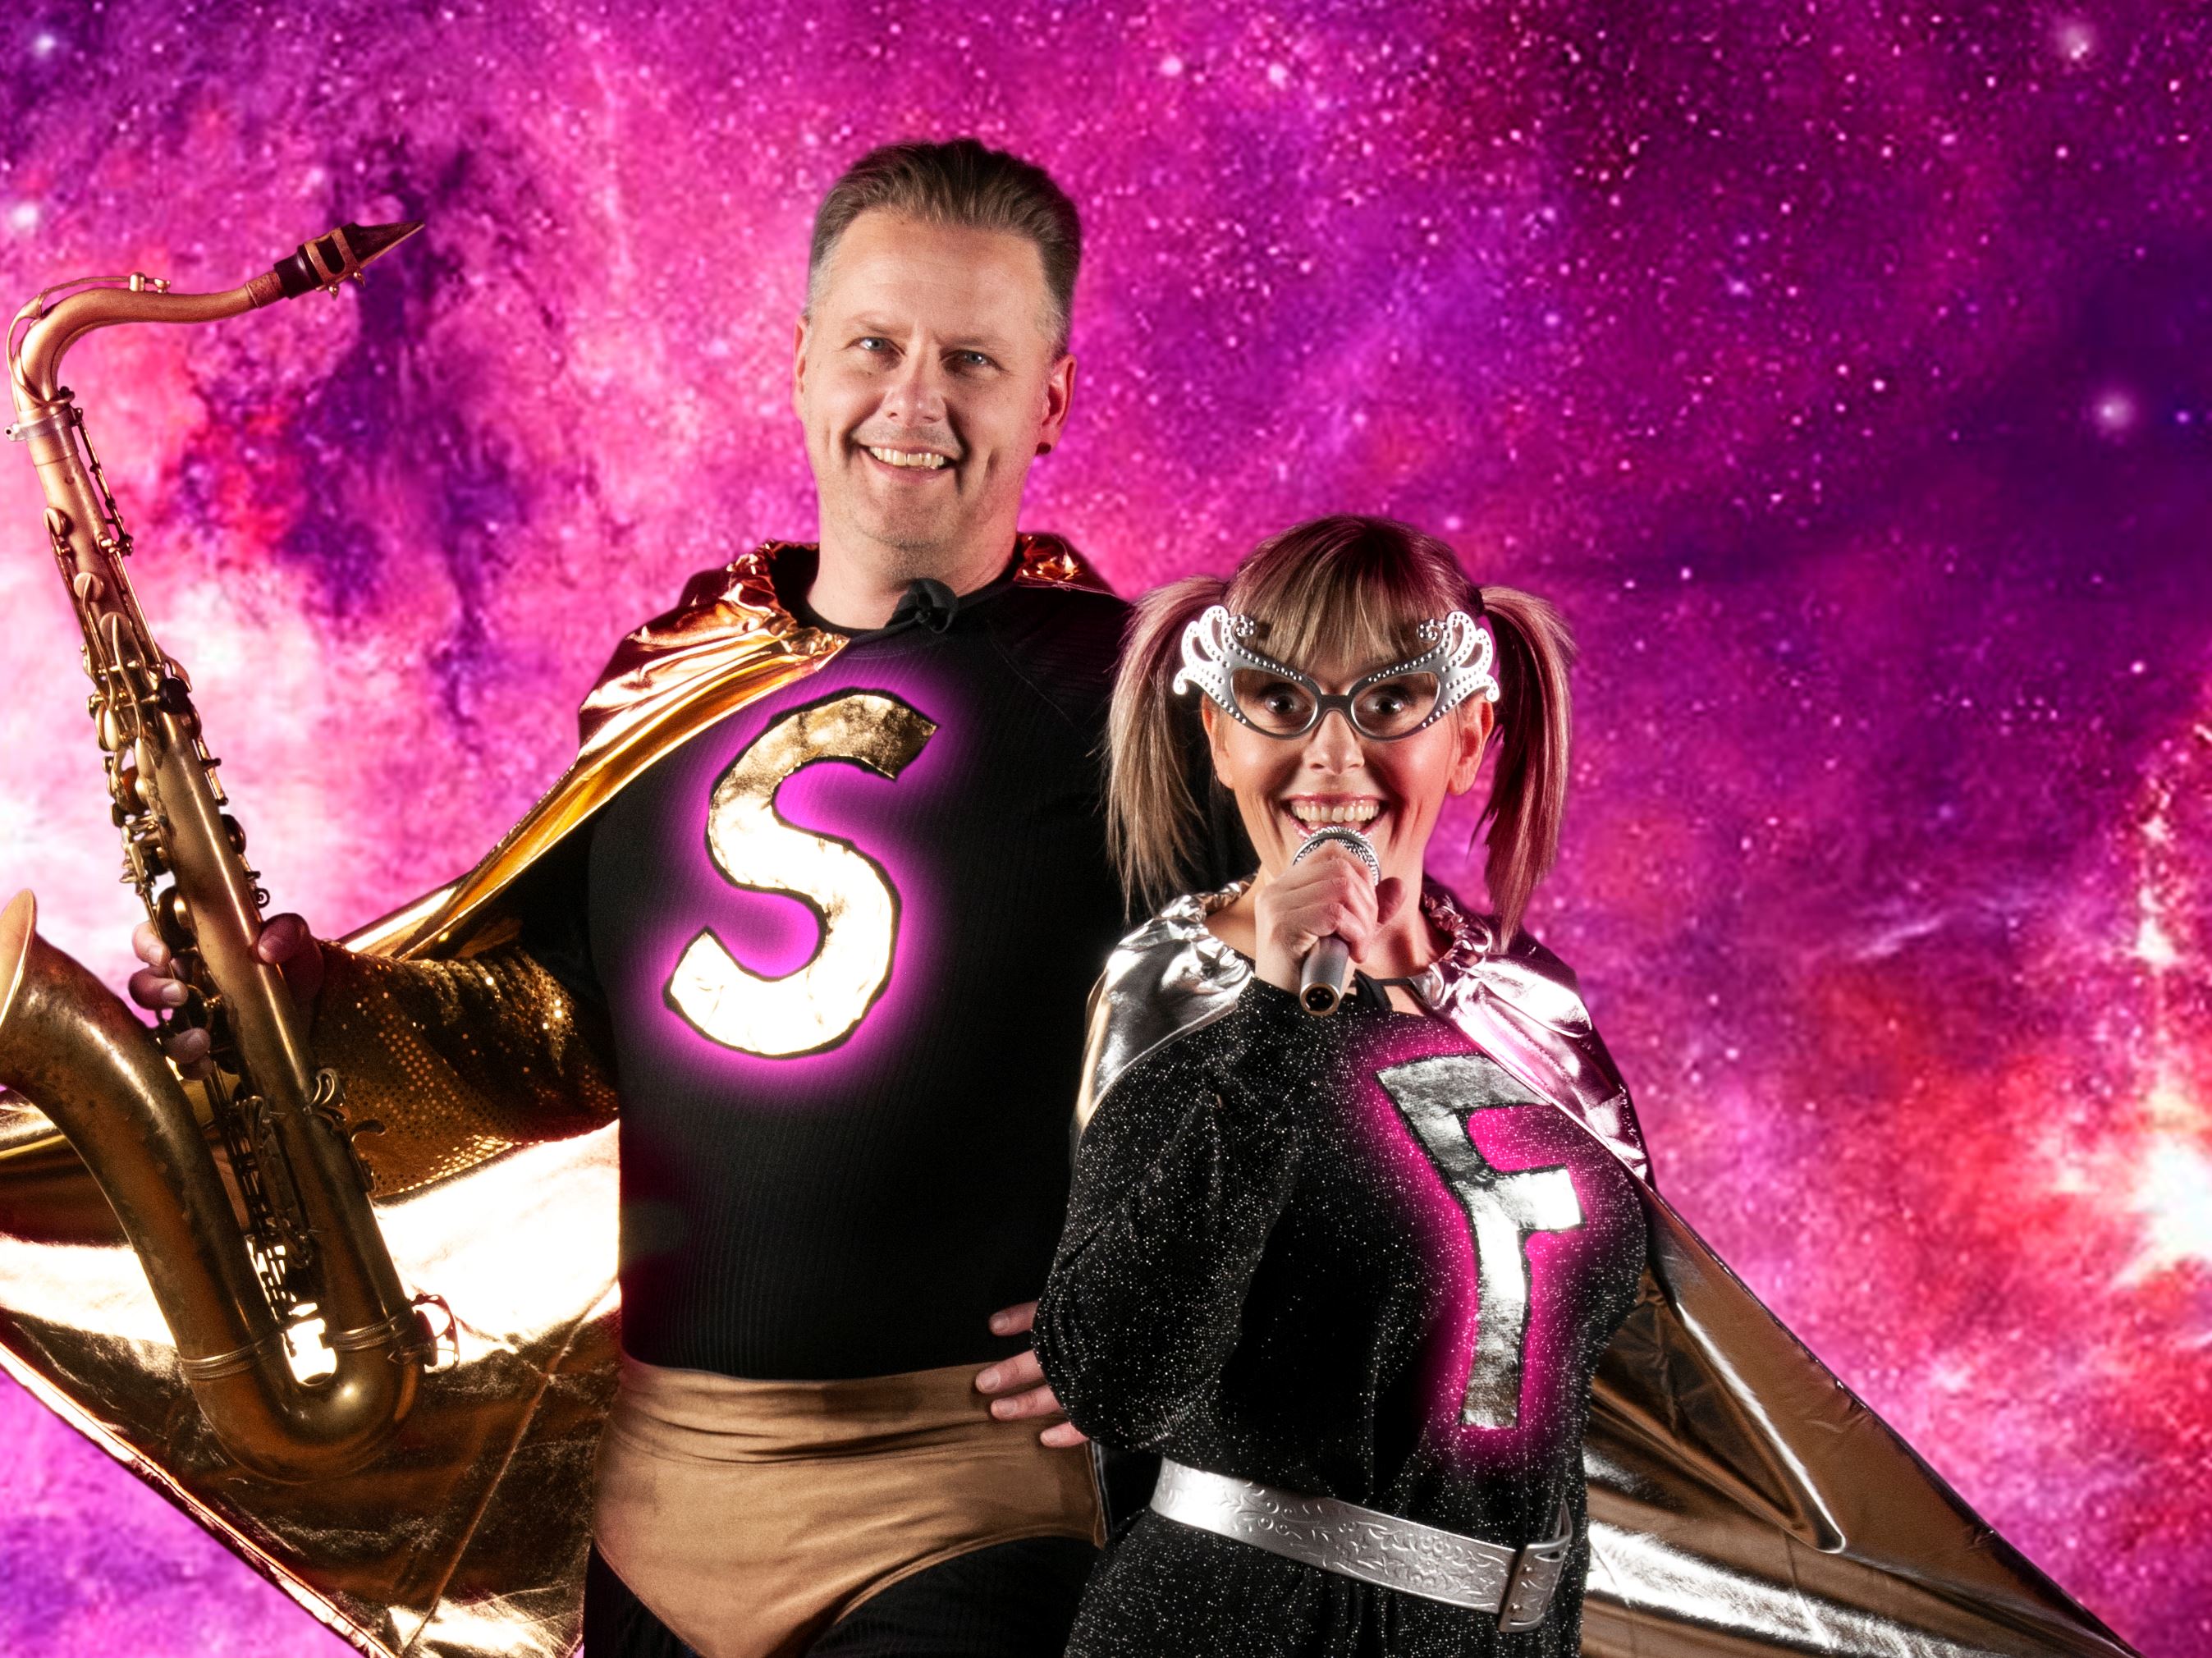 Ett bildkollage med Musikhjältarna ståendes på en planet med rosa och lila rymd bakom